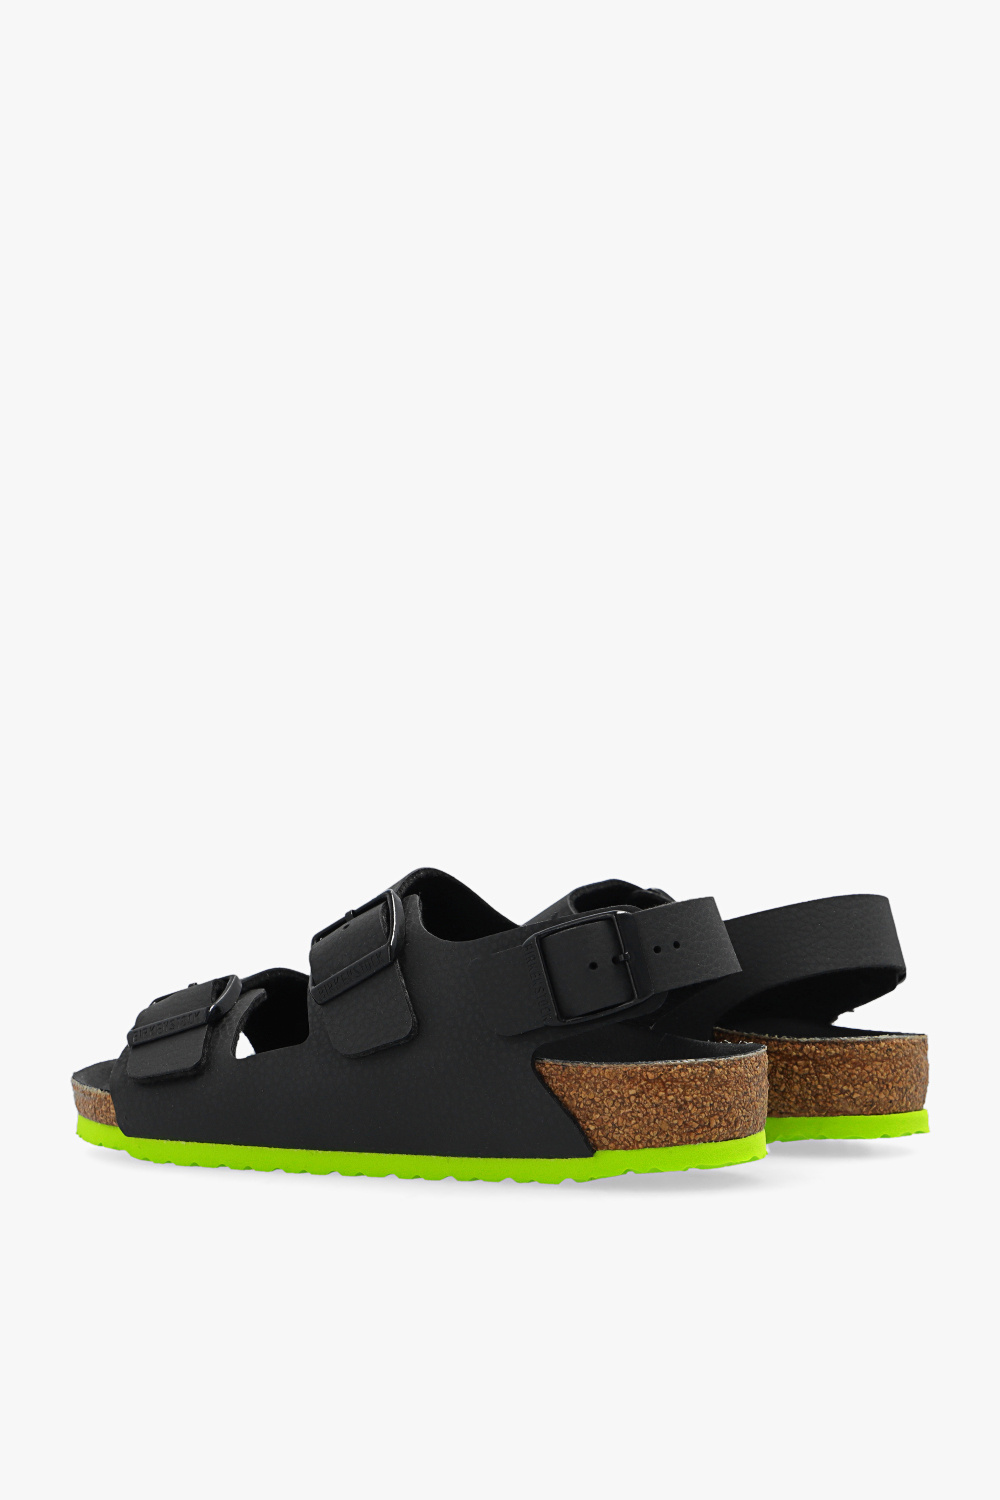 Birkenstock Kids ‘Milano’ sandals